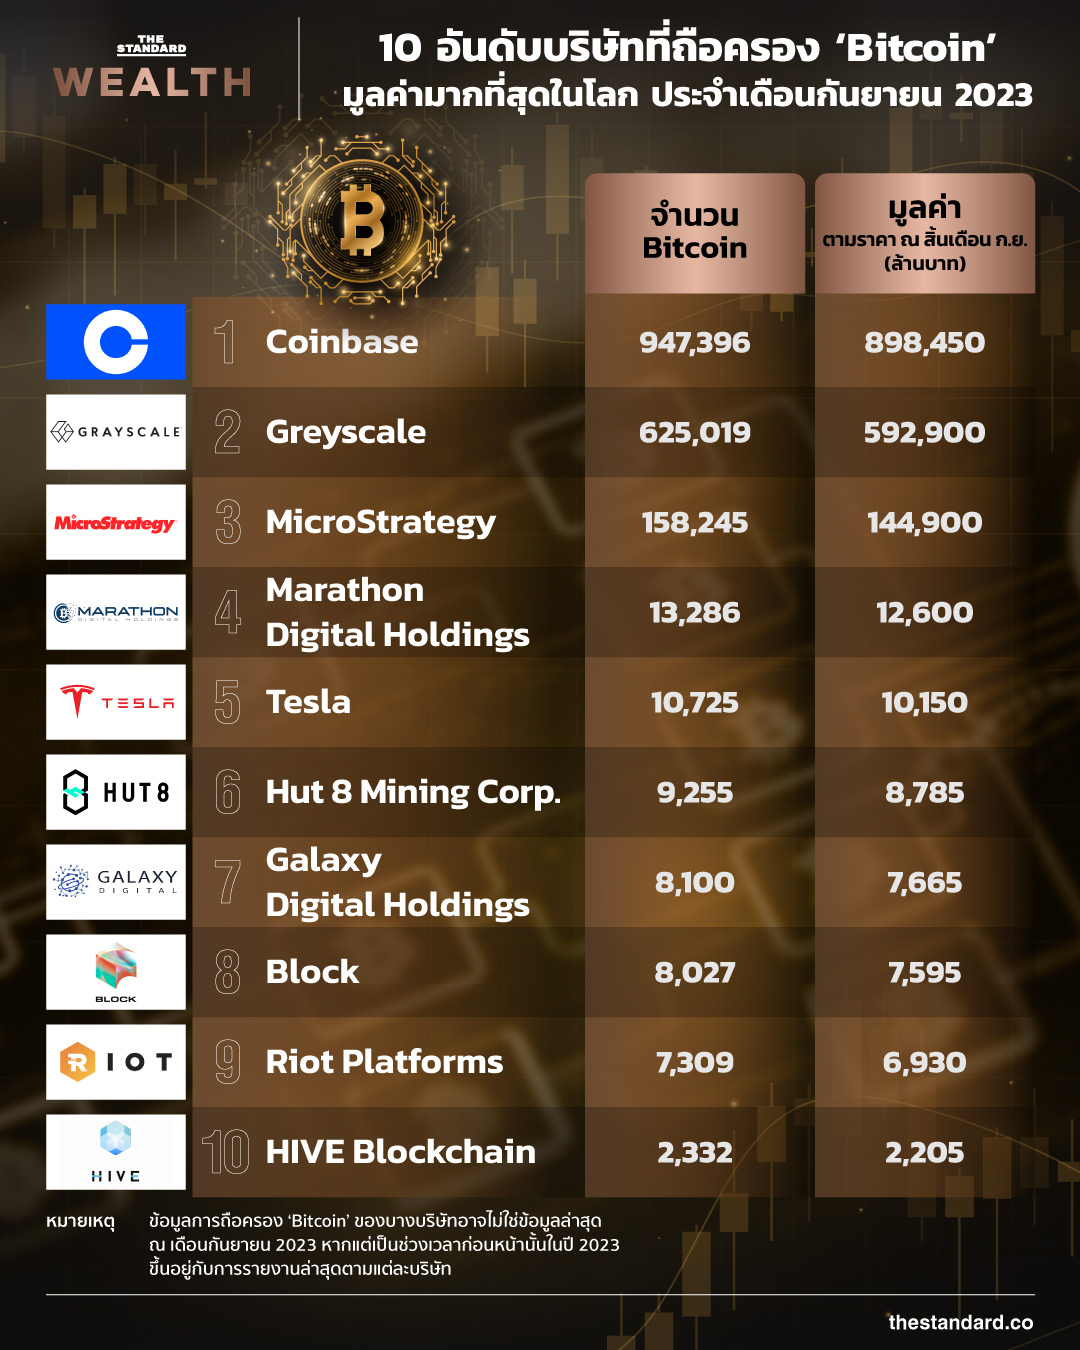 10 บริษัทที่ถือครอง Bitcoin มากที่สุด